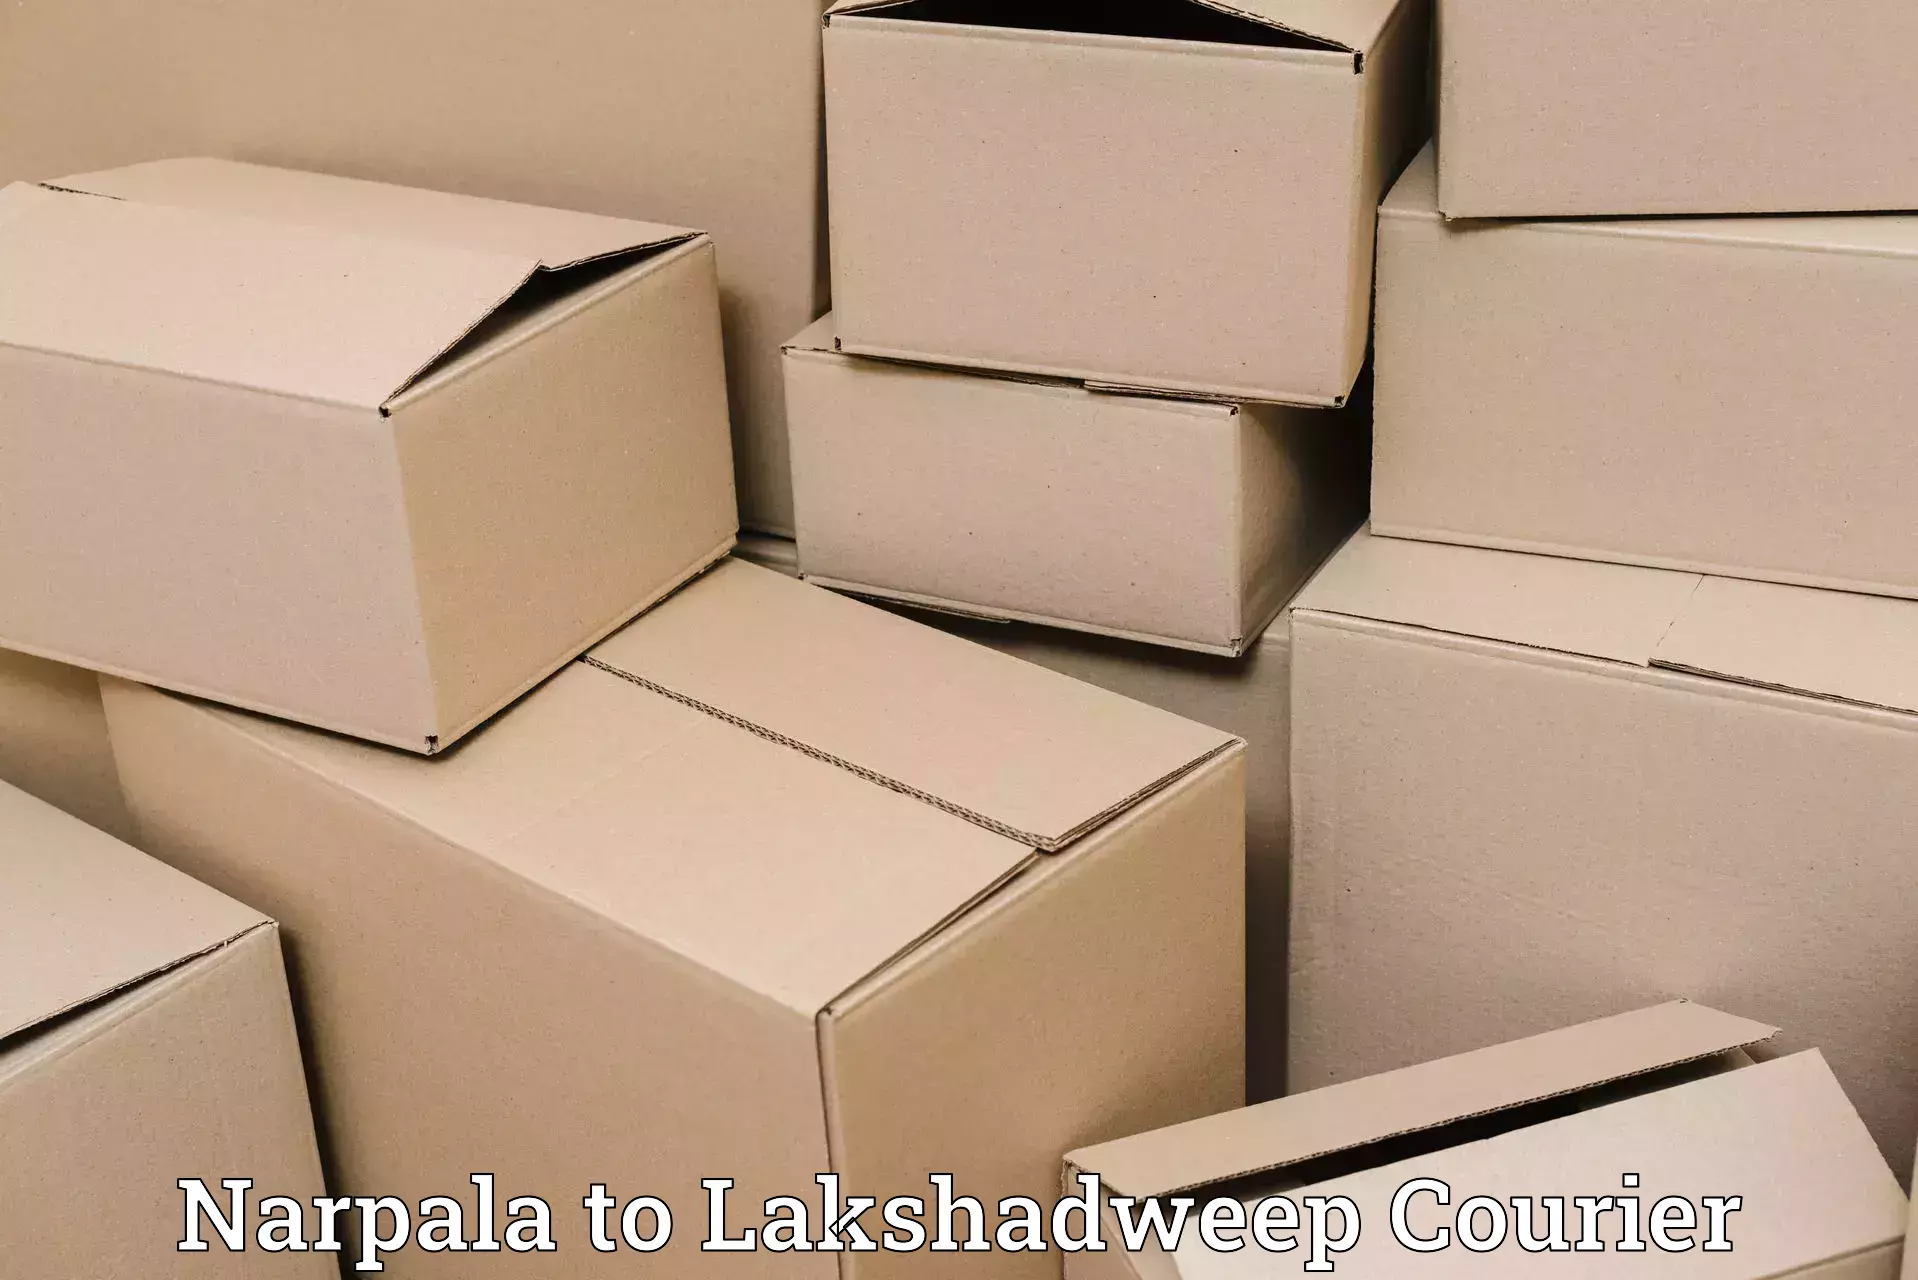 Customer-centric shipping Narpala to Lakshadweep